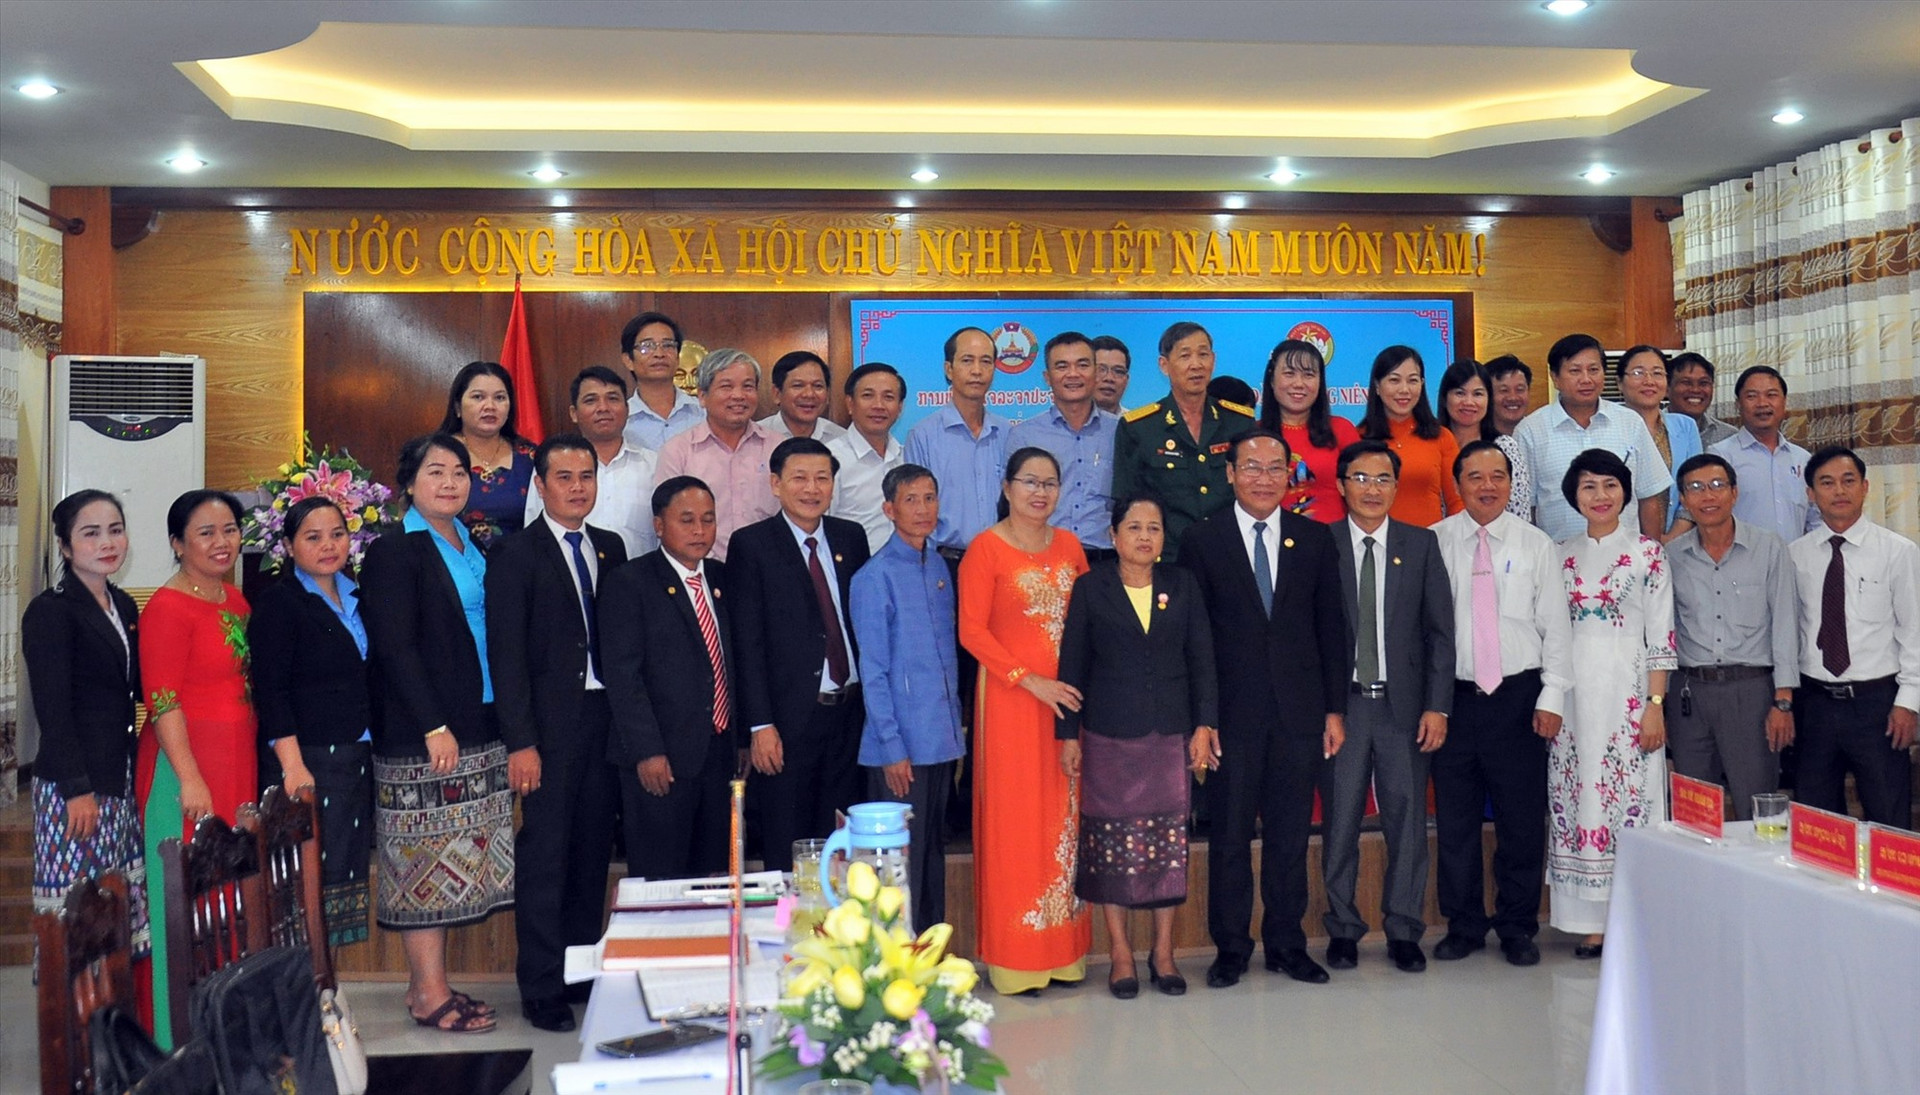 Ủy ban MTTQ Việt Nam tỉnh Quảng Nam và Ủy ban Mặt trận Lào xây dựng đất nước tỉnh Sê Kông chụp hình lưu niệm tại buổi hội đàm năm 2019. Ảnh: VINH ANH